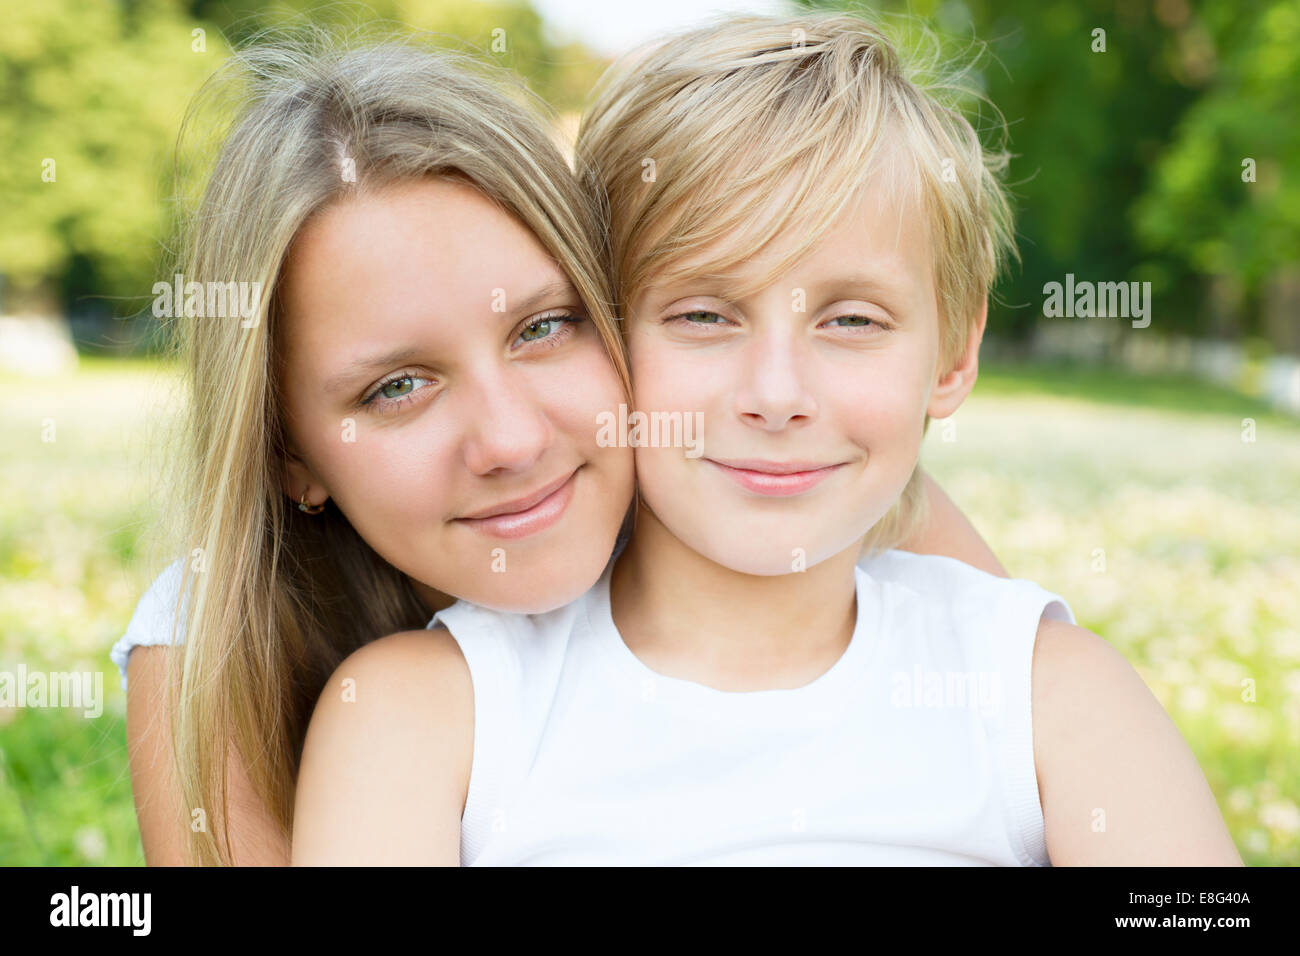 Retrato de niño y niña close-up Foto de stock